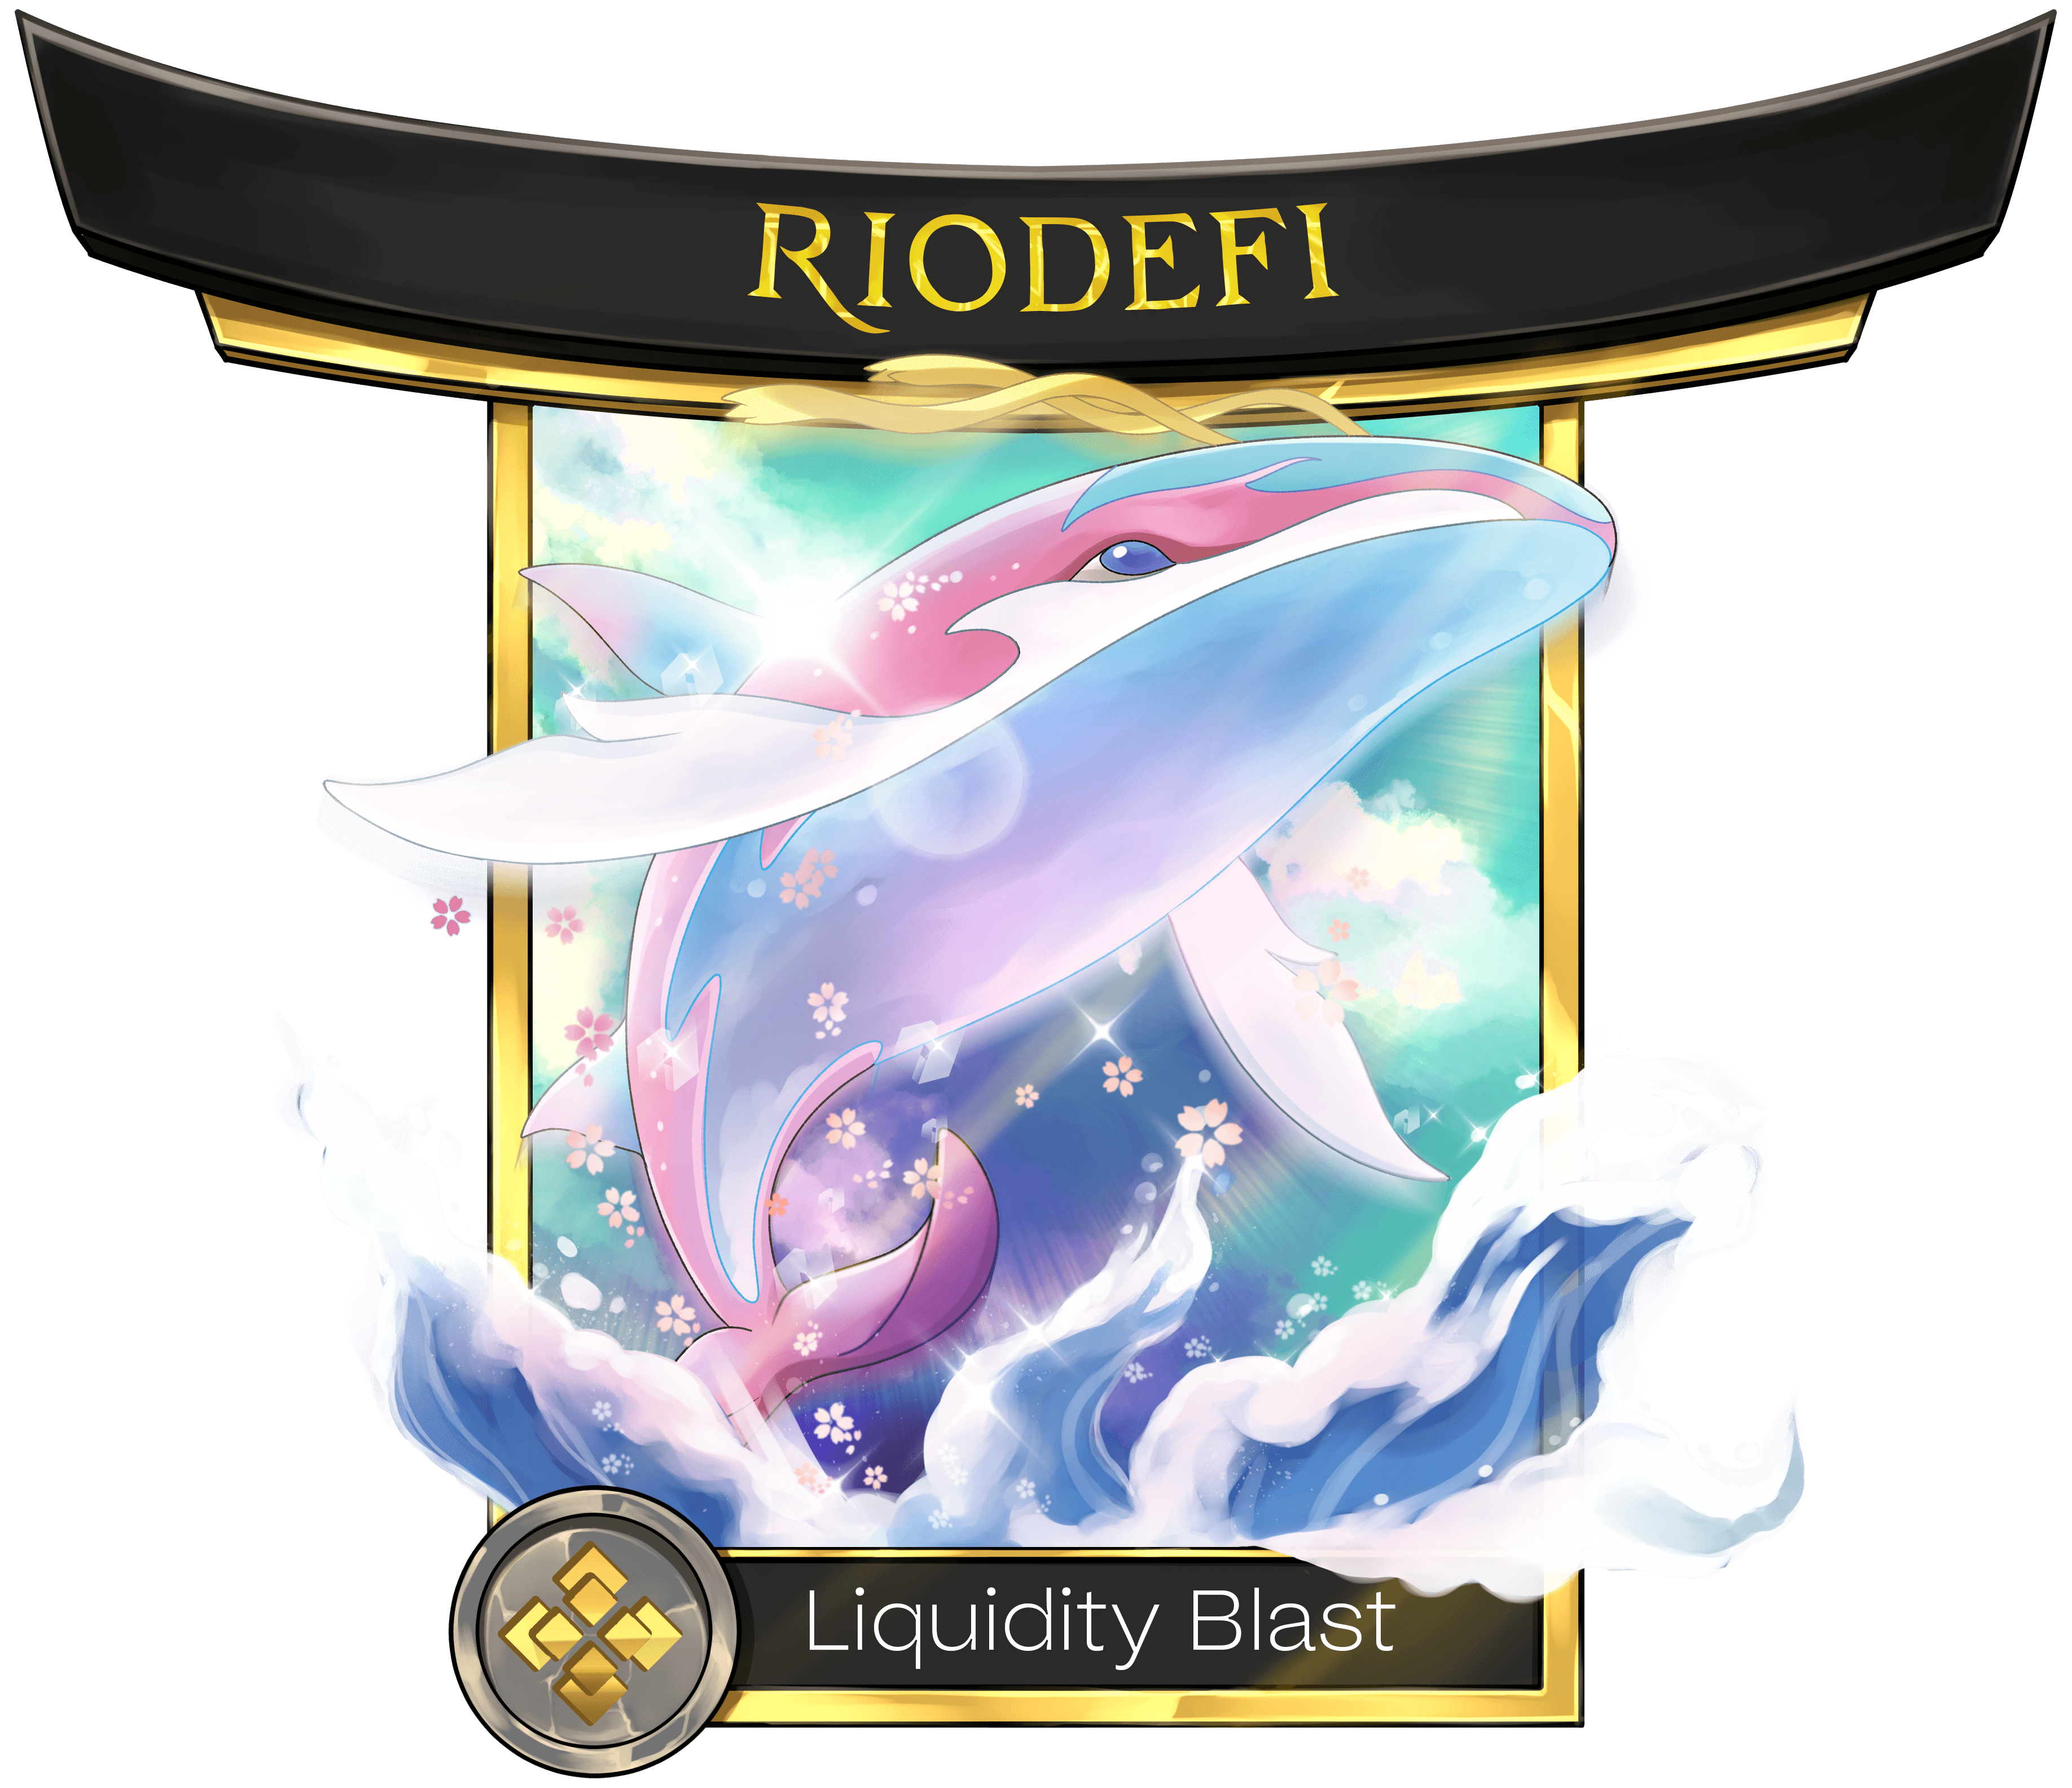 RioDeFi (Liquidity Blast)